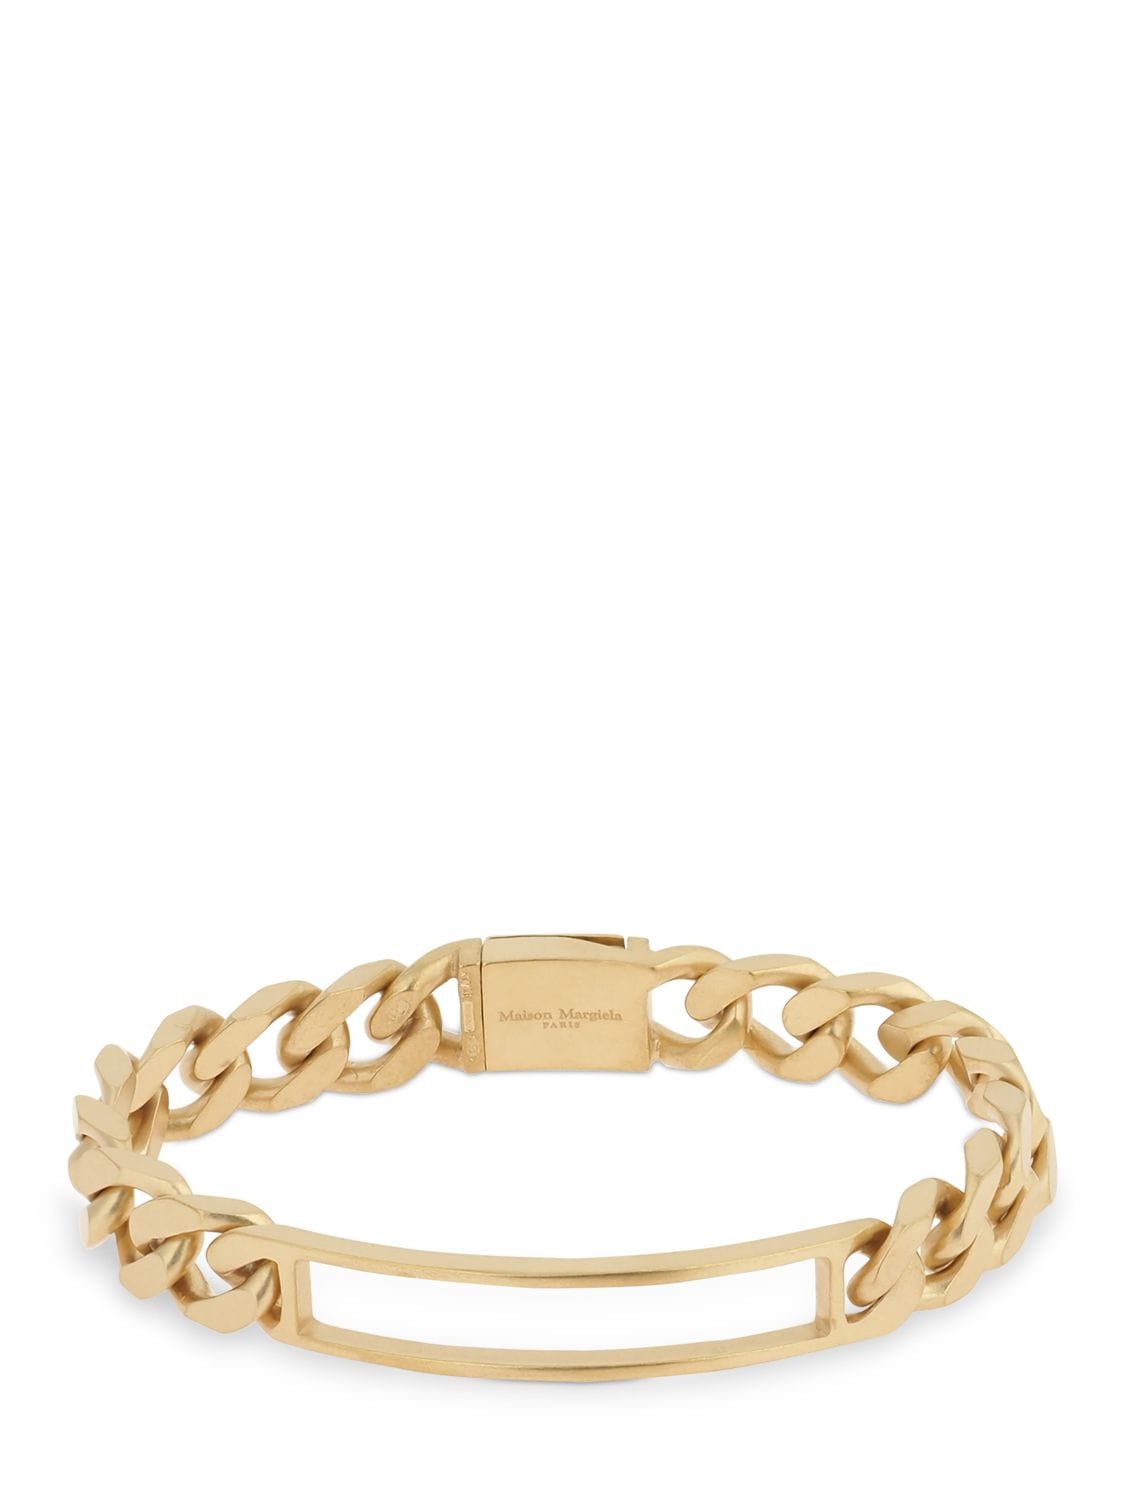 Maison Margiela Brushed Gold Pleated Chain Bracelet